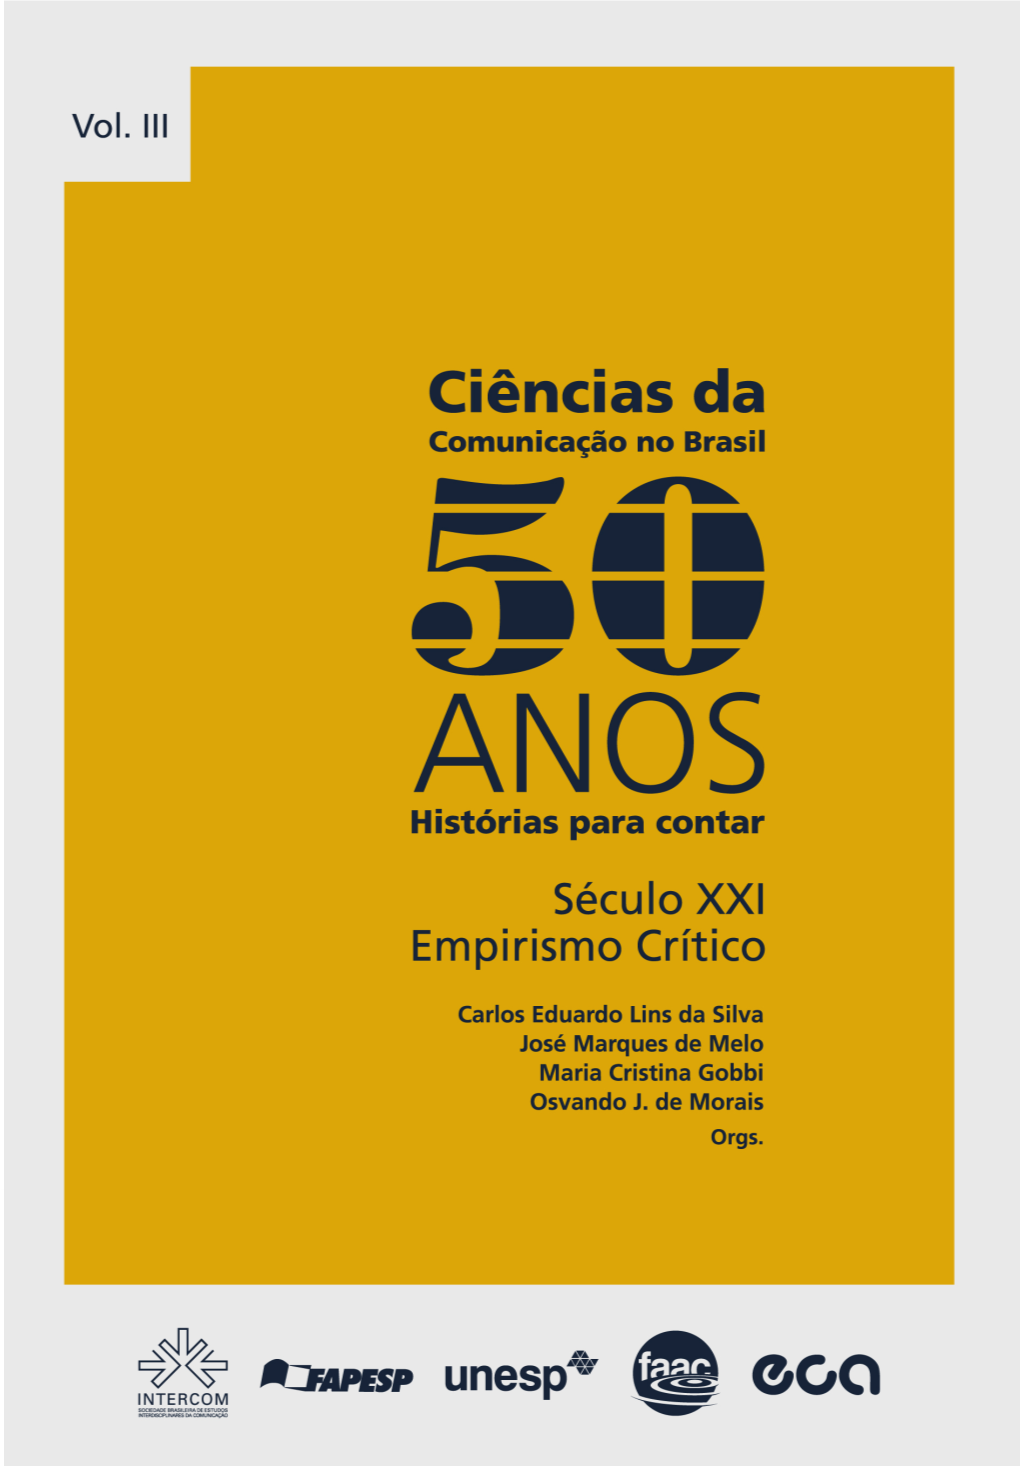 Ciências Da Comunicação No Brasil 50 Anos: Histórias Para Contar